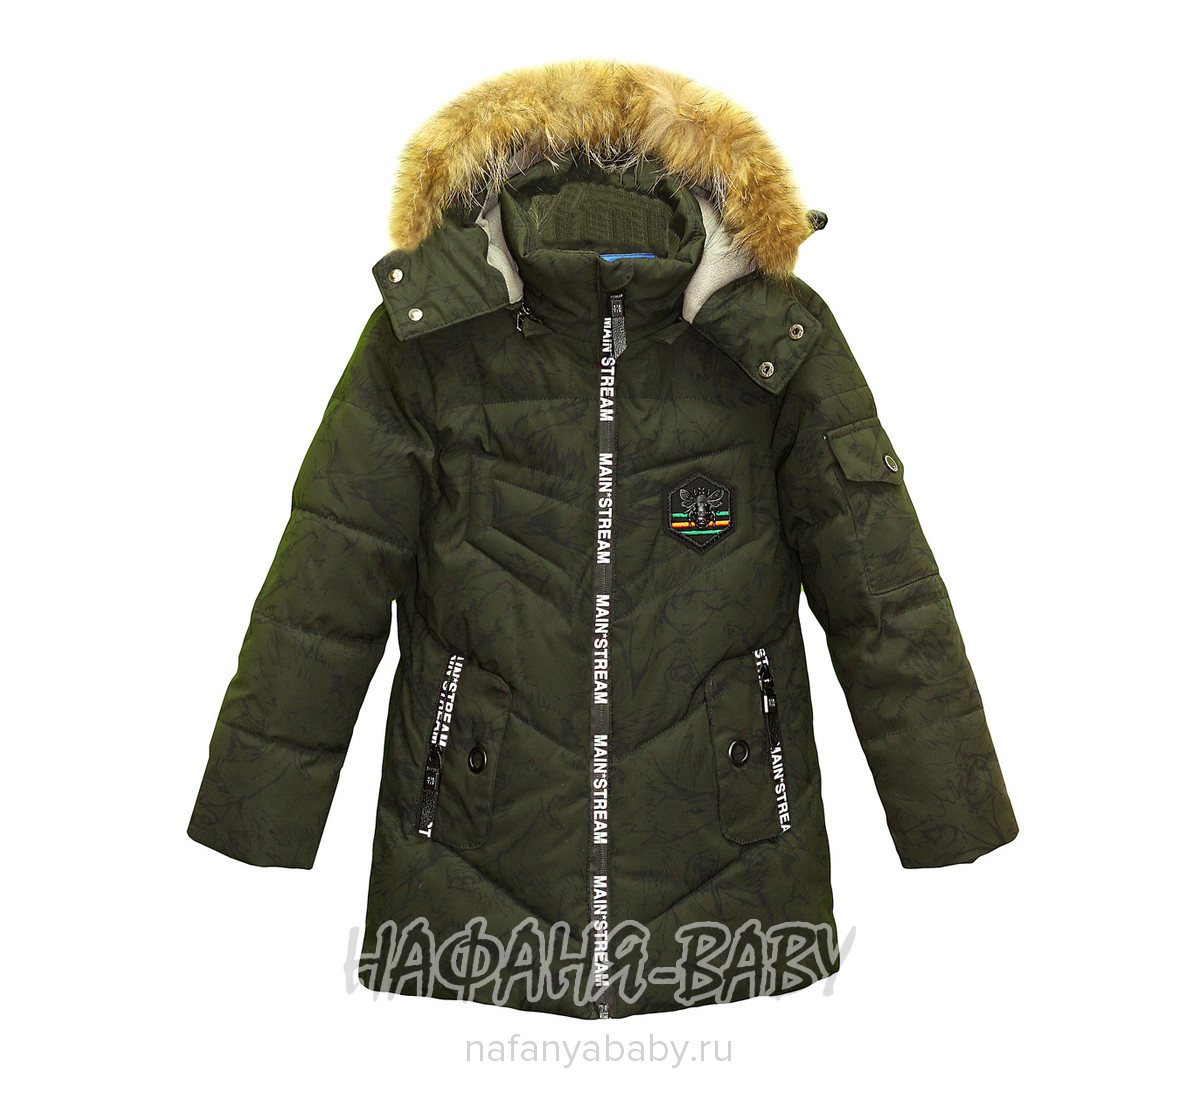 Зимняя куртка для мальчика VIPONOV арт: 1812, 5-9 лет, 1-4 года, оптом Китай (Пекин)